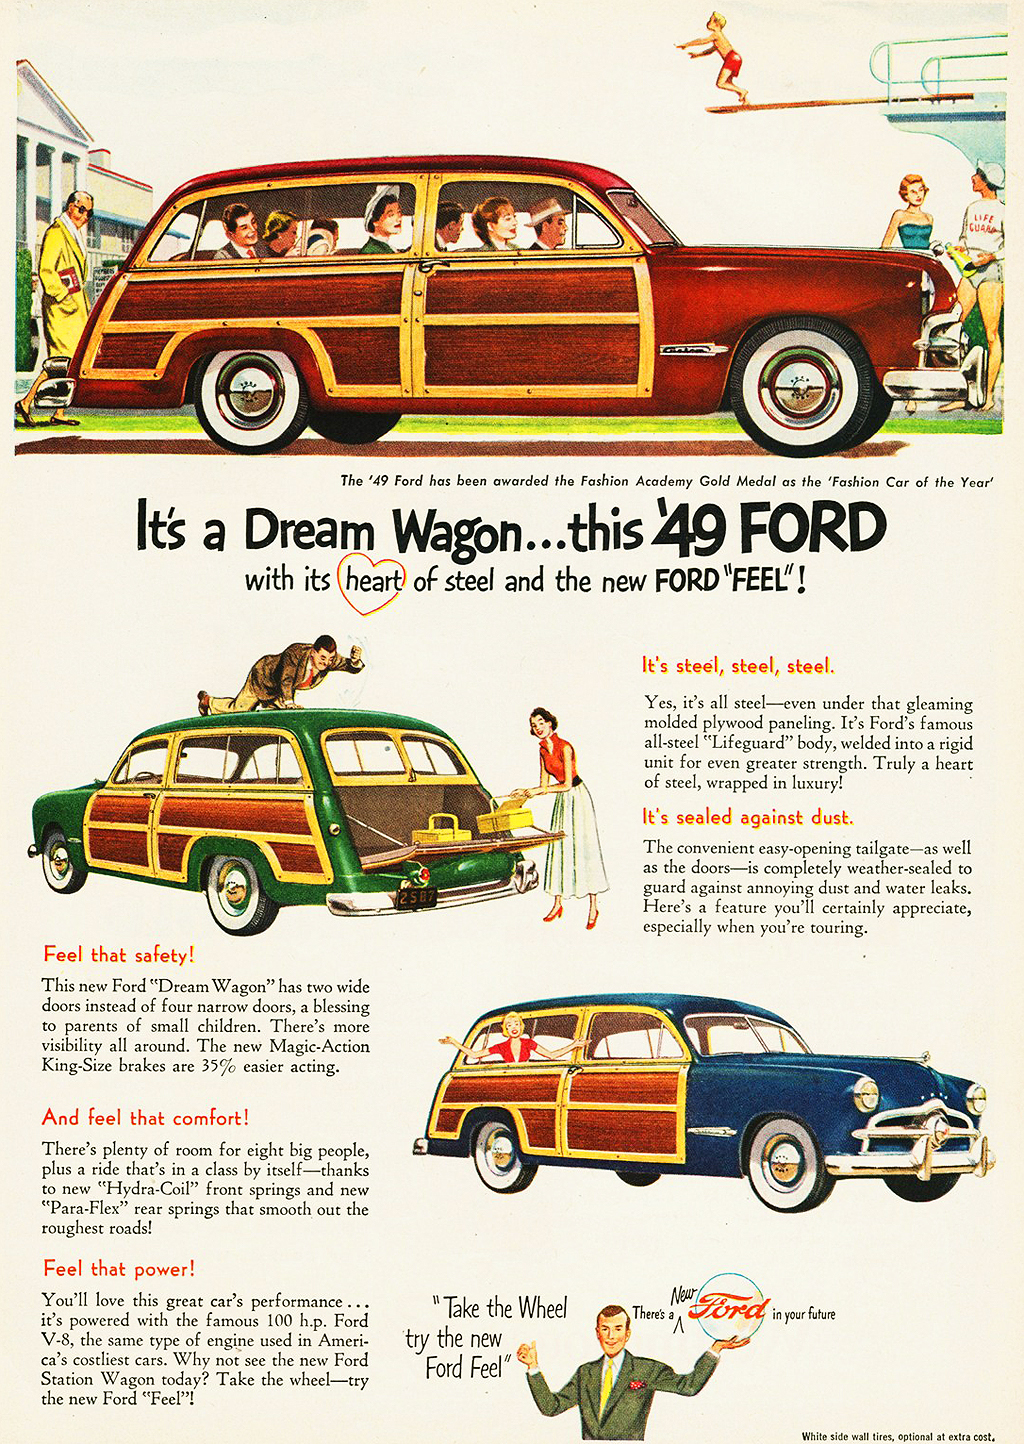 1949 Woodie Wagon